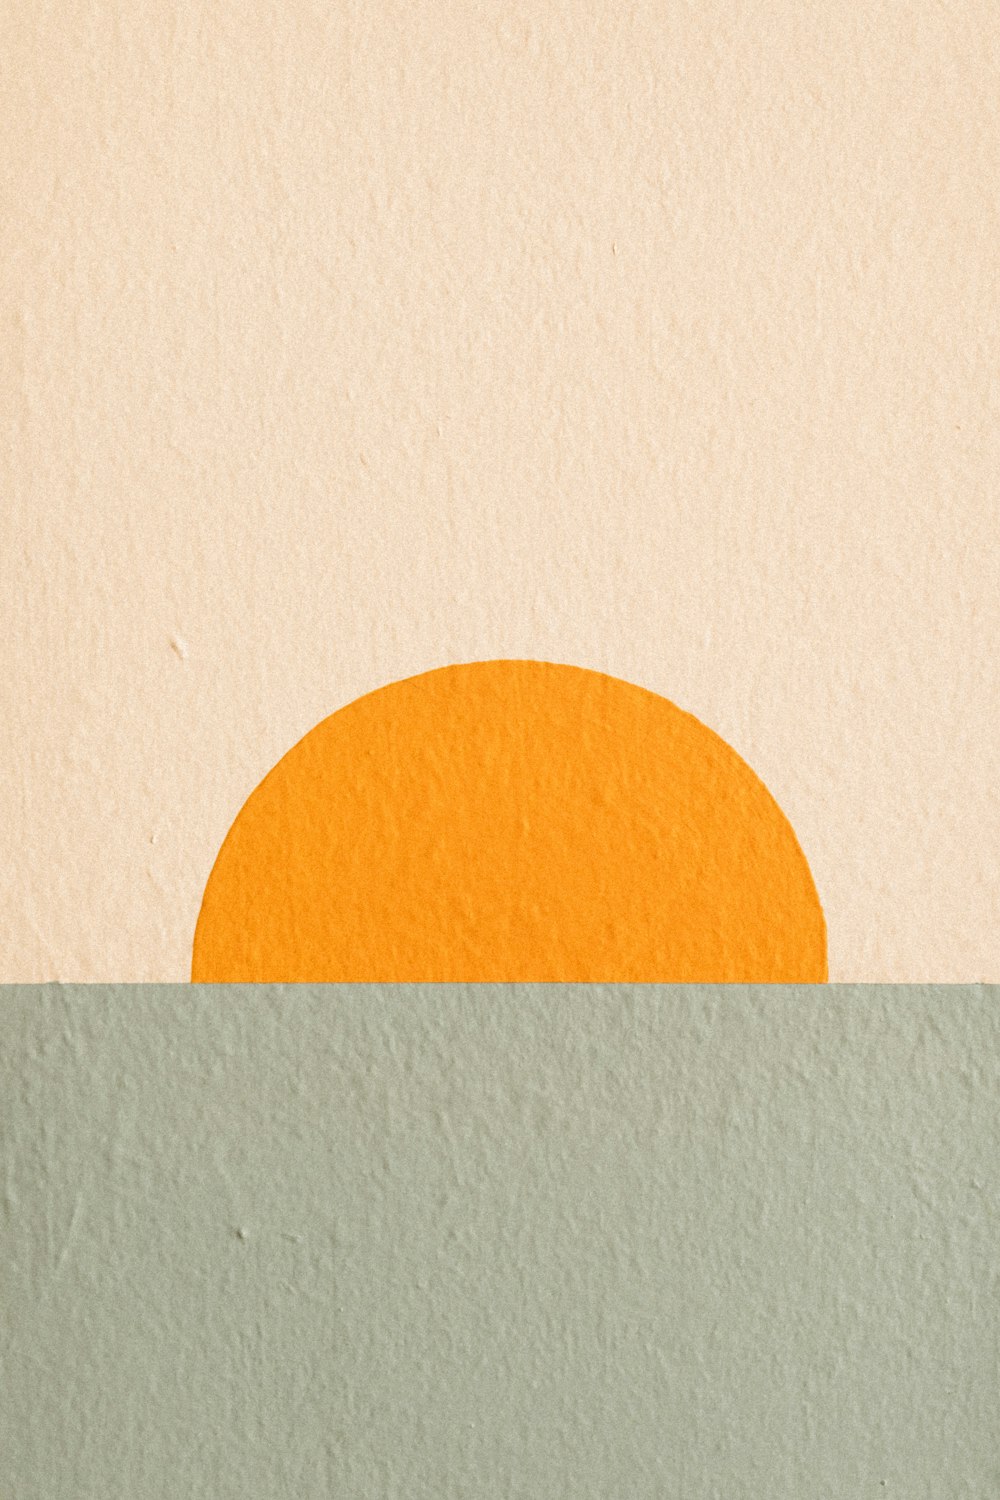 Una pintura de un sol naranja en medio de un cuerpo de agua